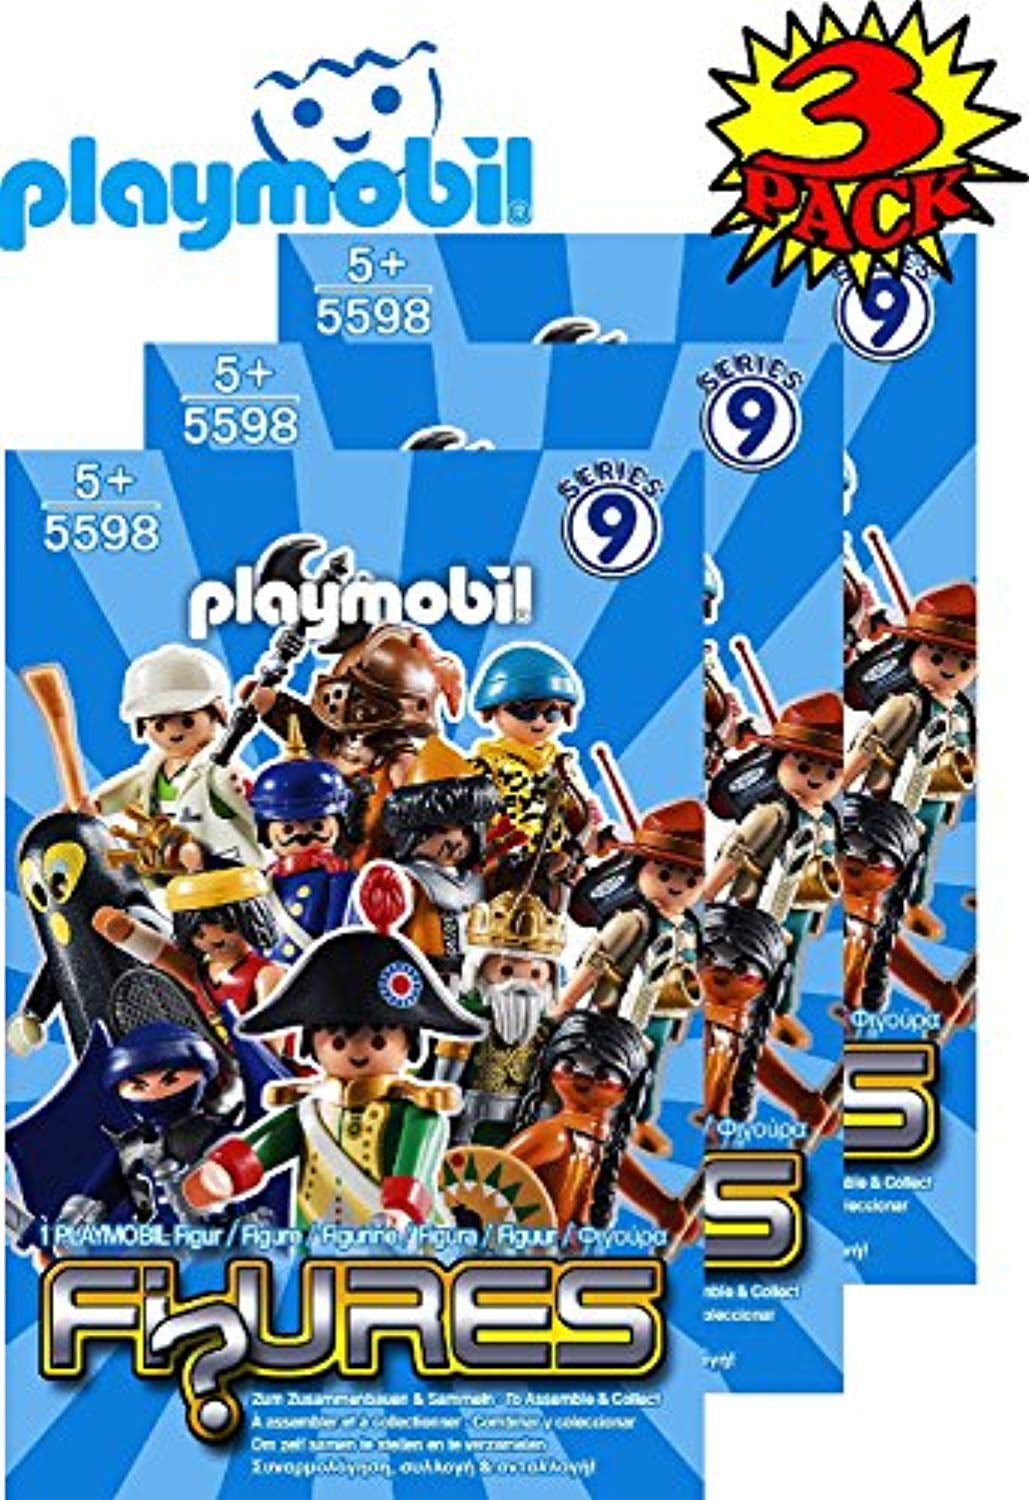 Playmobil SERIES 9 MILITARY MAN IN SPIKED HELMET new figure orig pkg PM #5598 